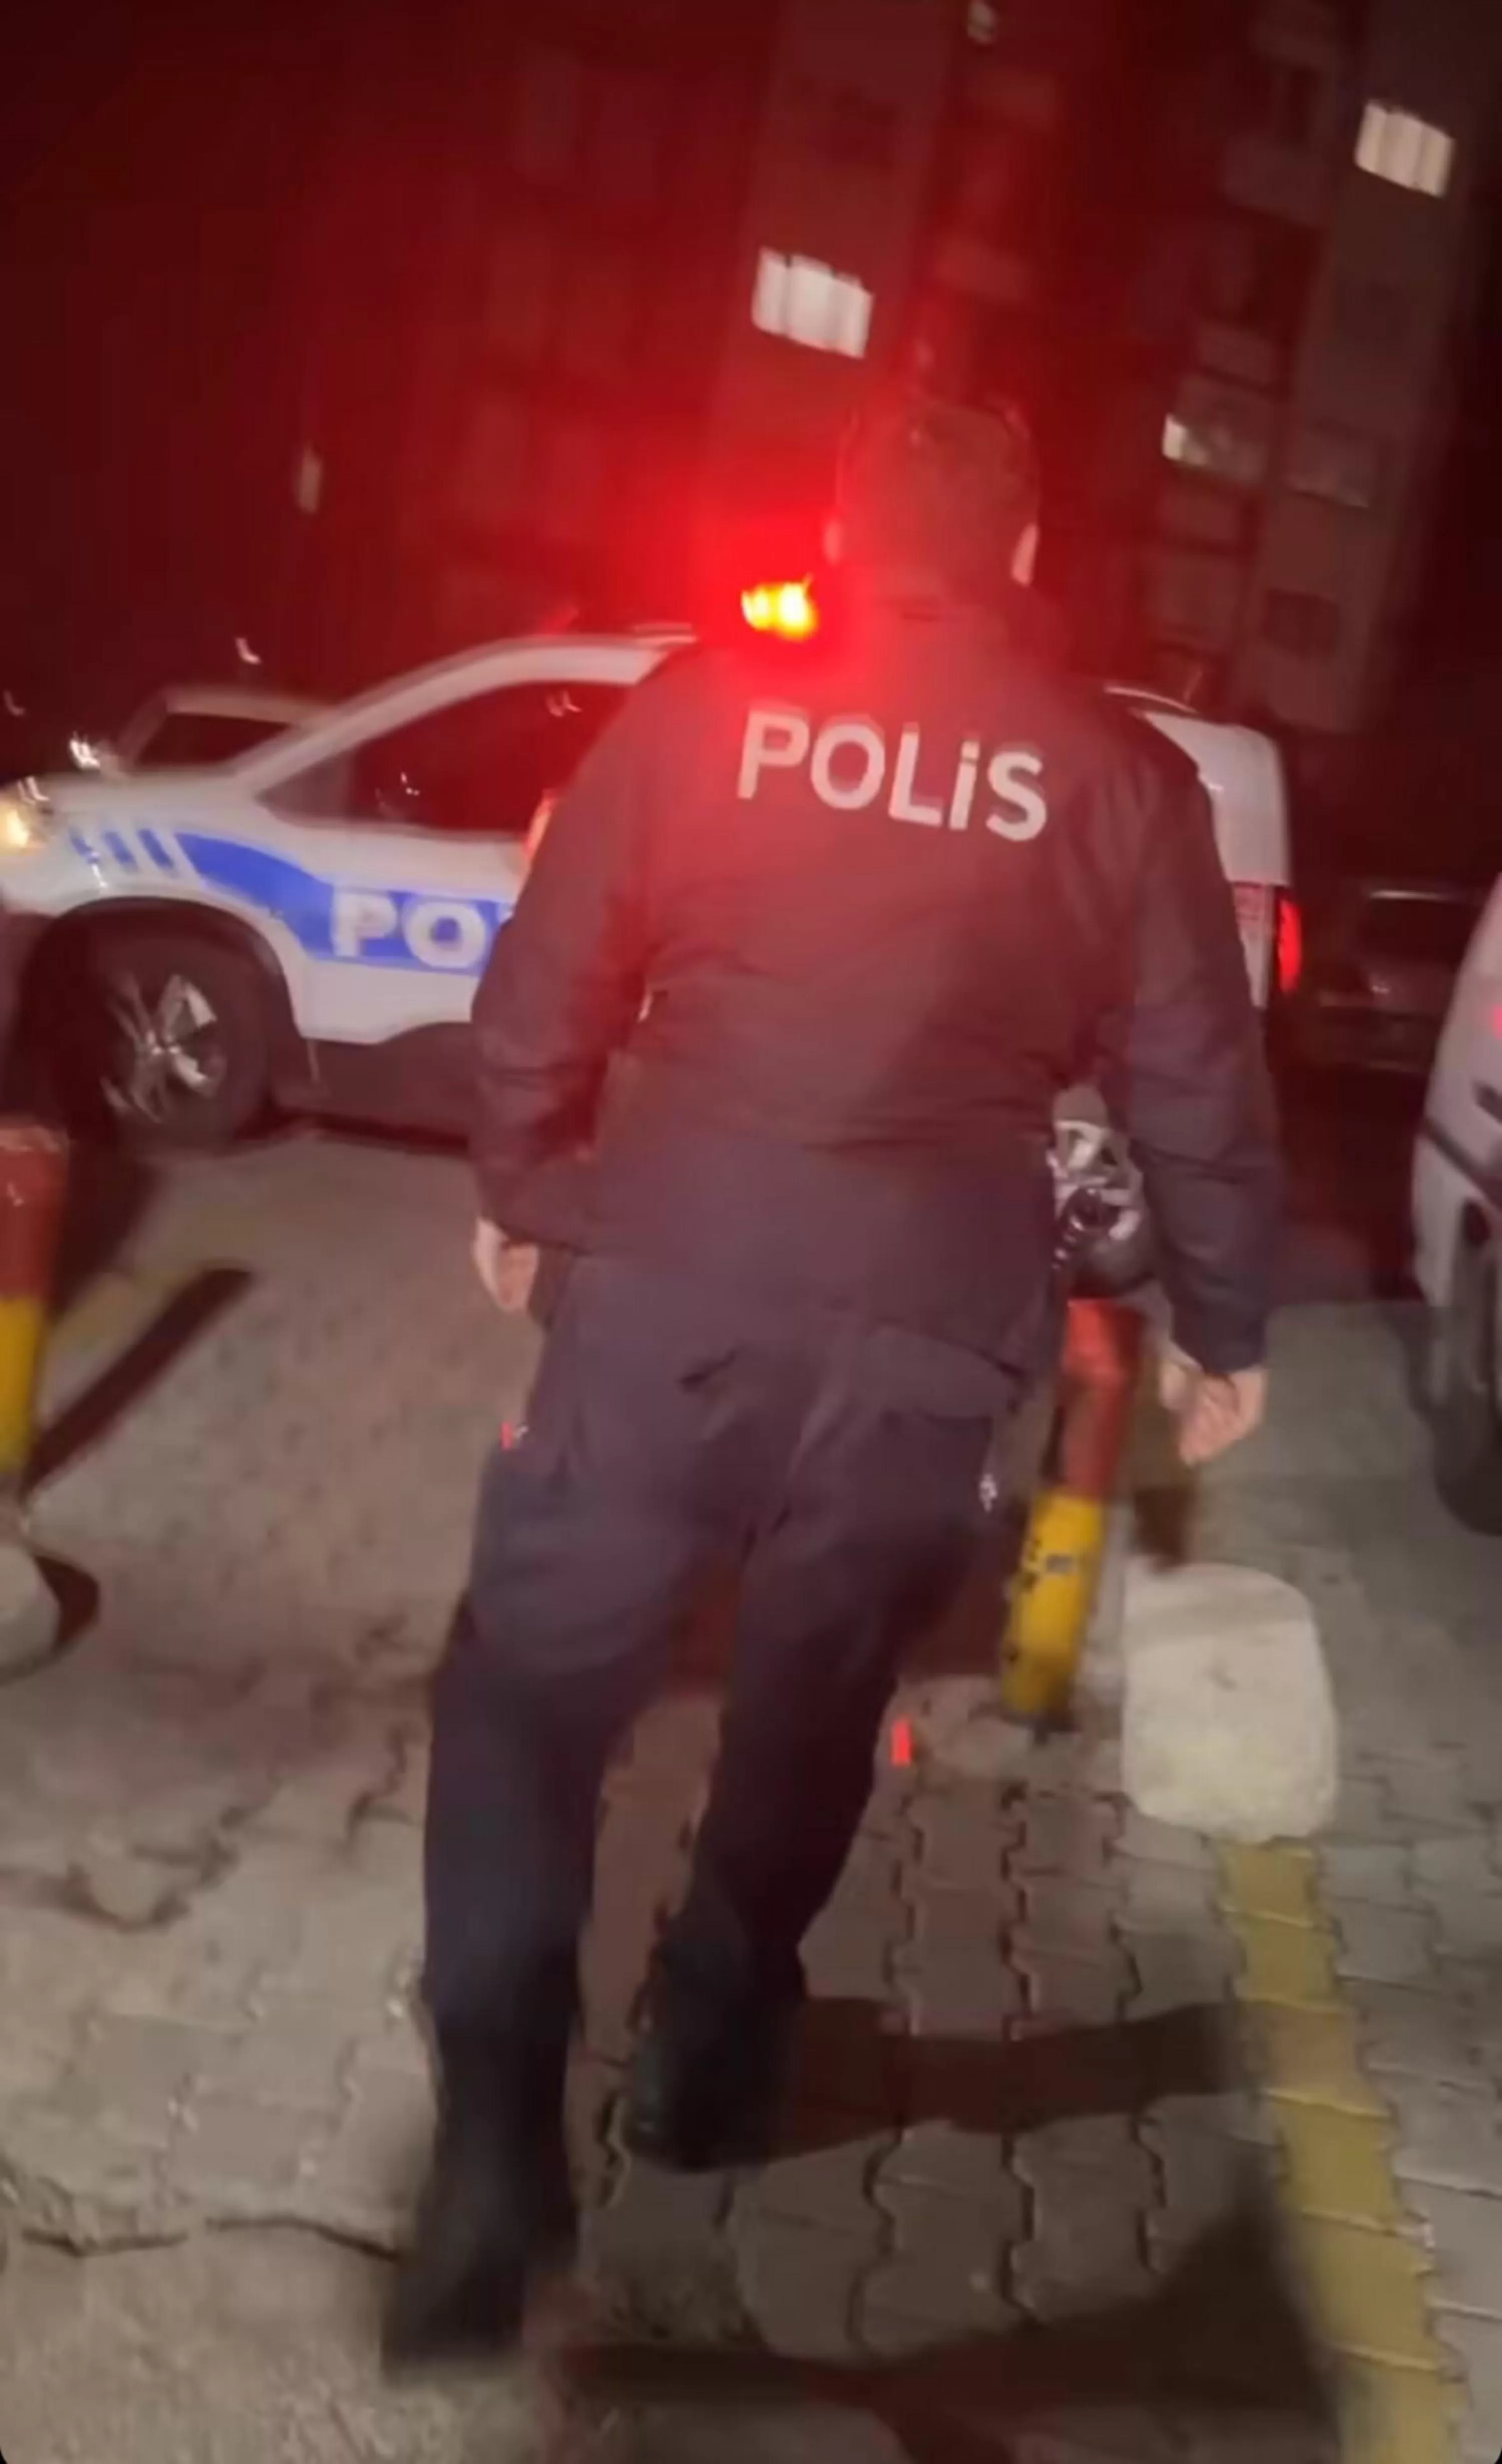 İzmir'in Karabağlar ilçesinde yaşanan olayda, eşinden şiddet gördüğü iddiasıyla KADES uygulaması aracılığıyla yardım talep eden bir kadın, eve gelen polisi vurdu.